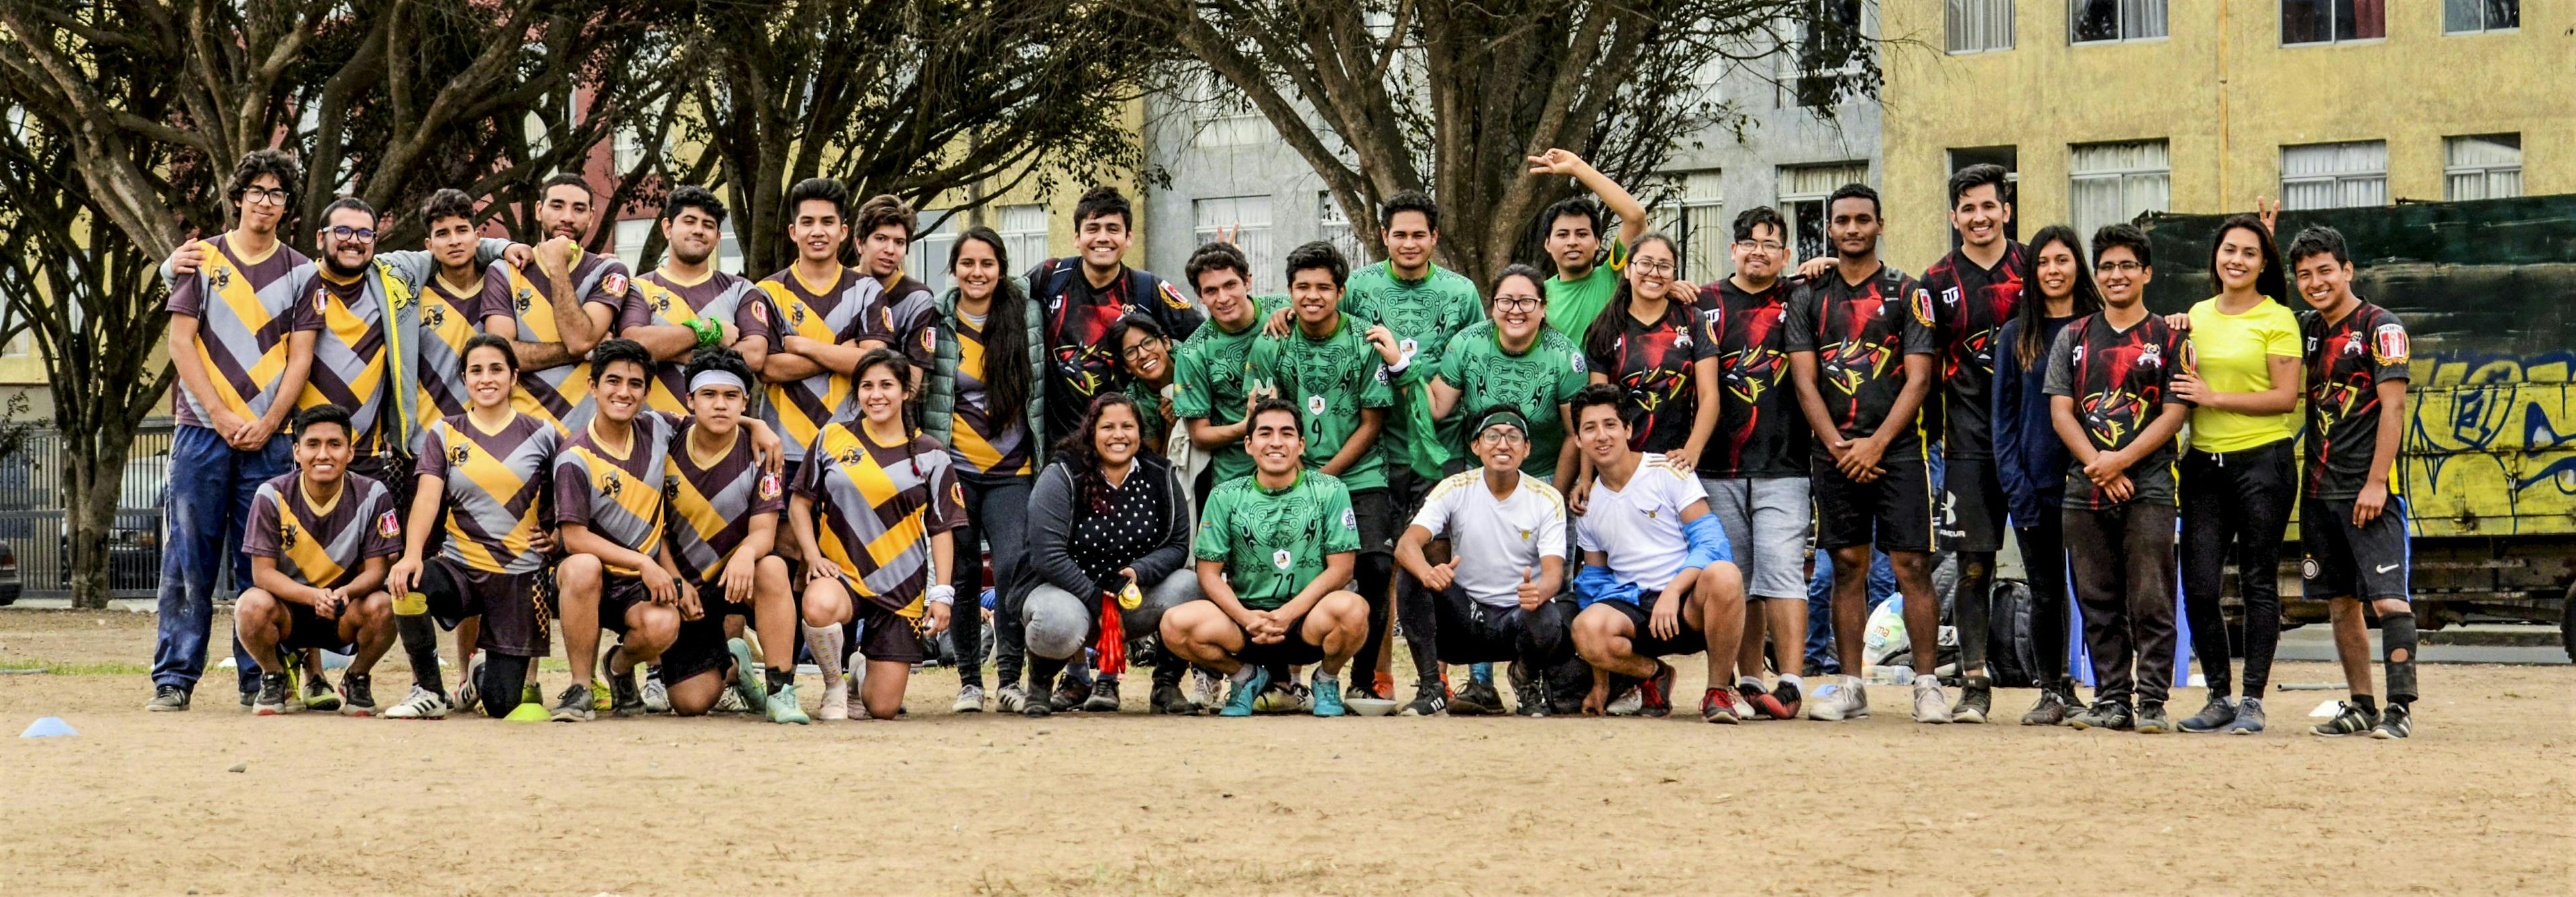 Quidditch Peru group photo